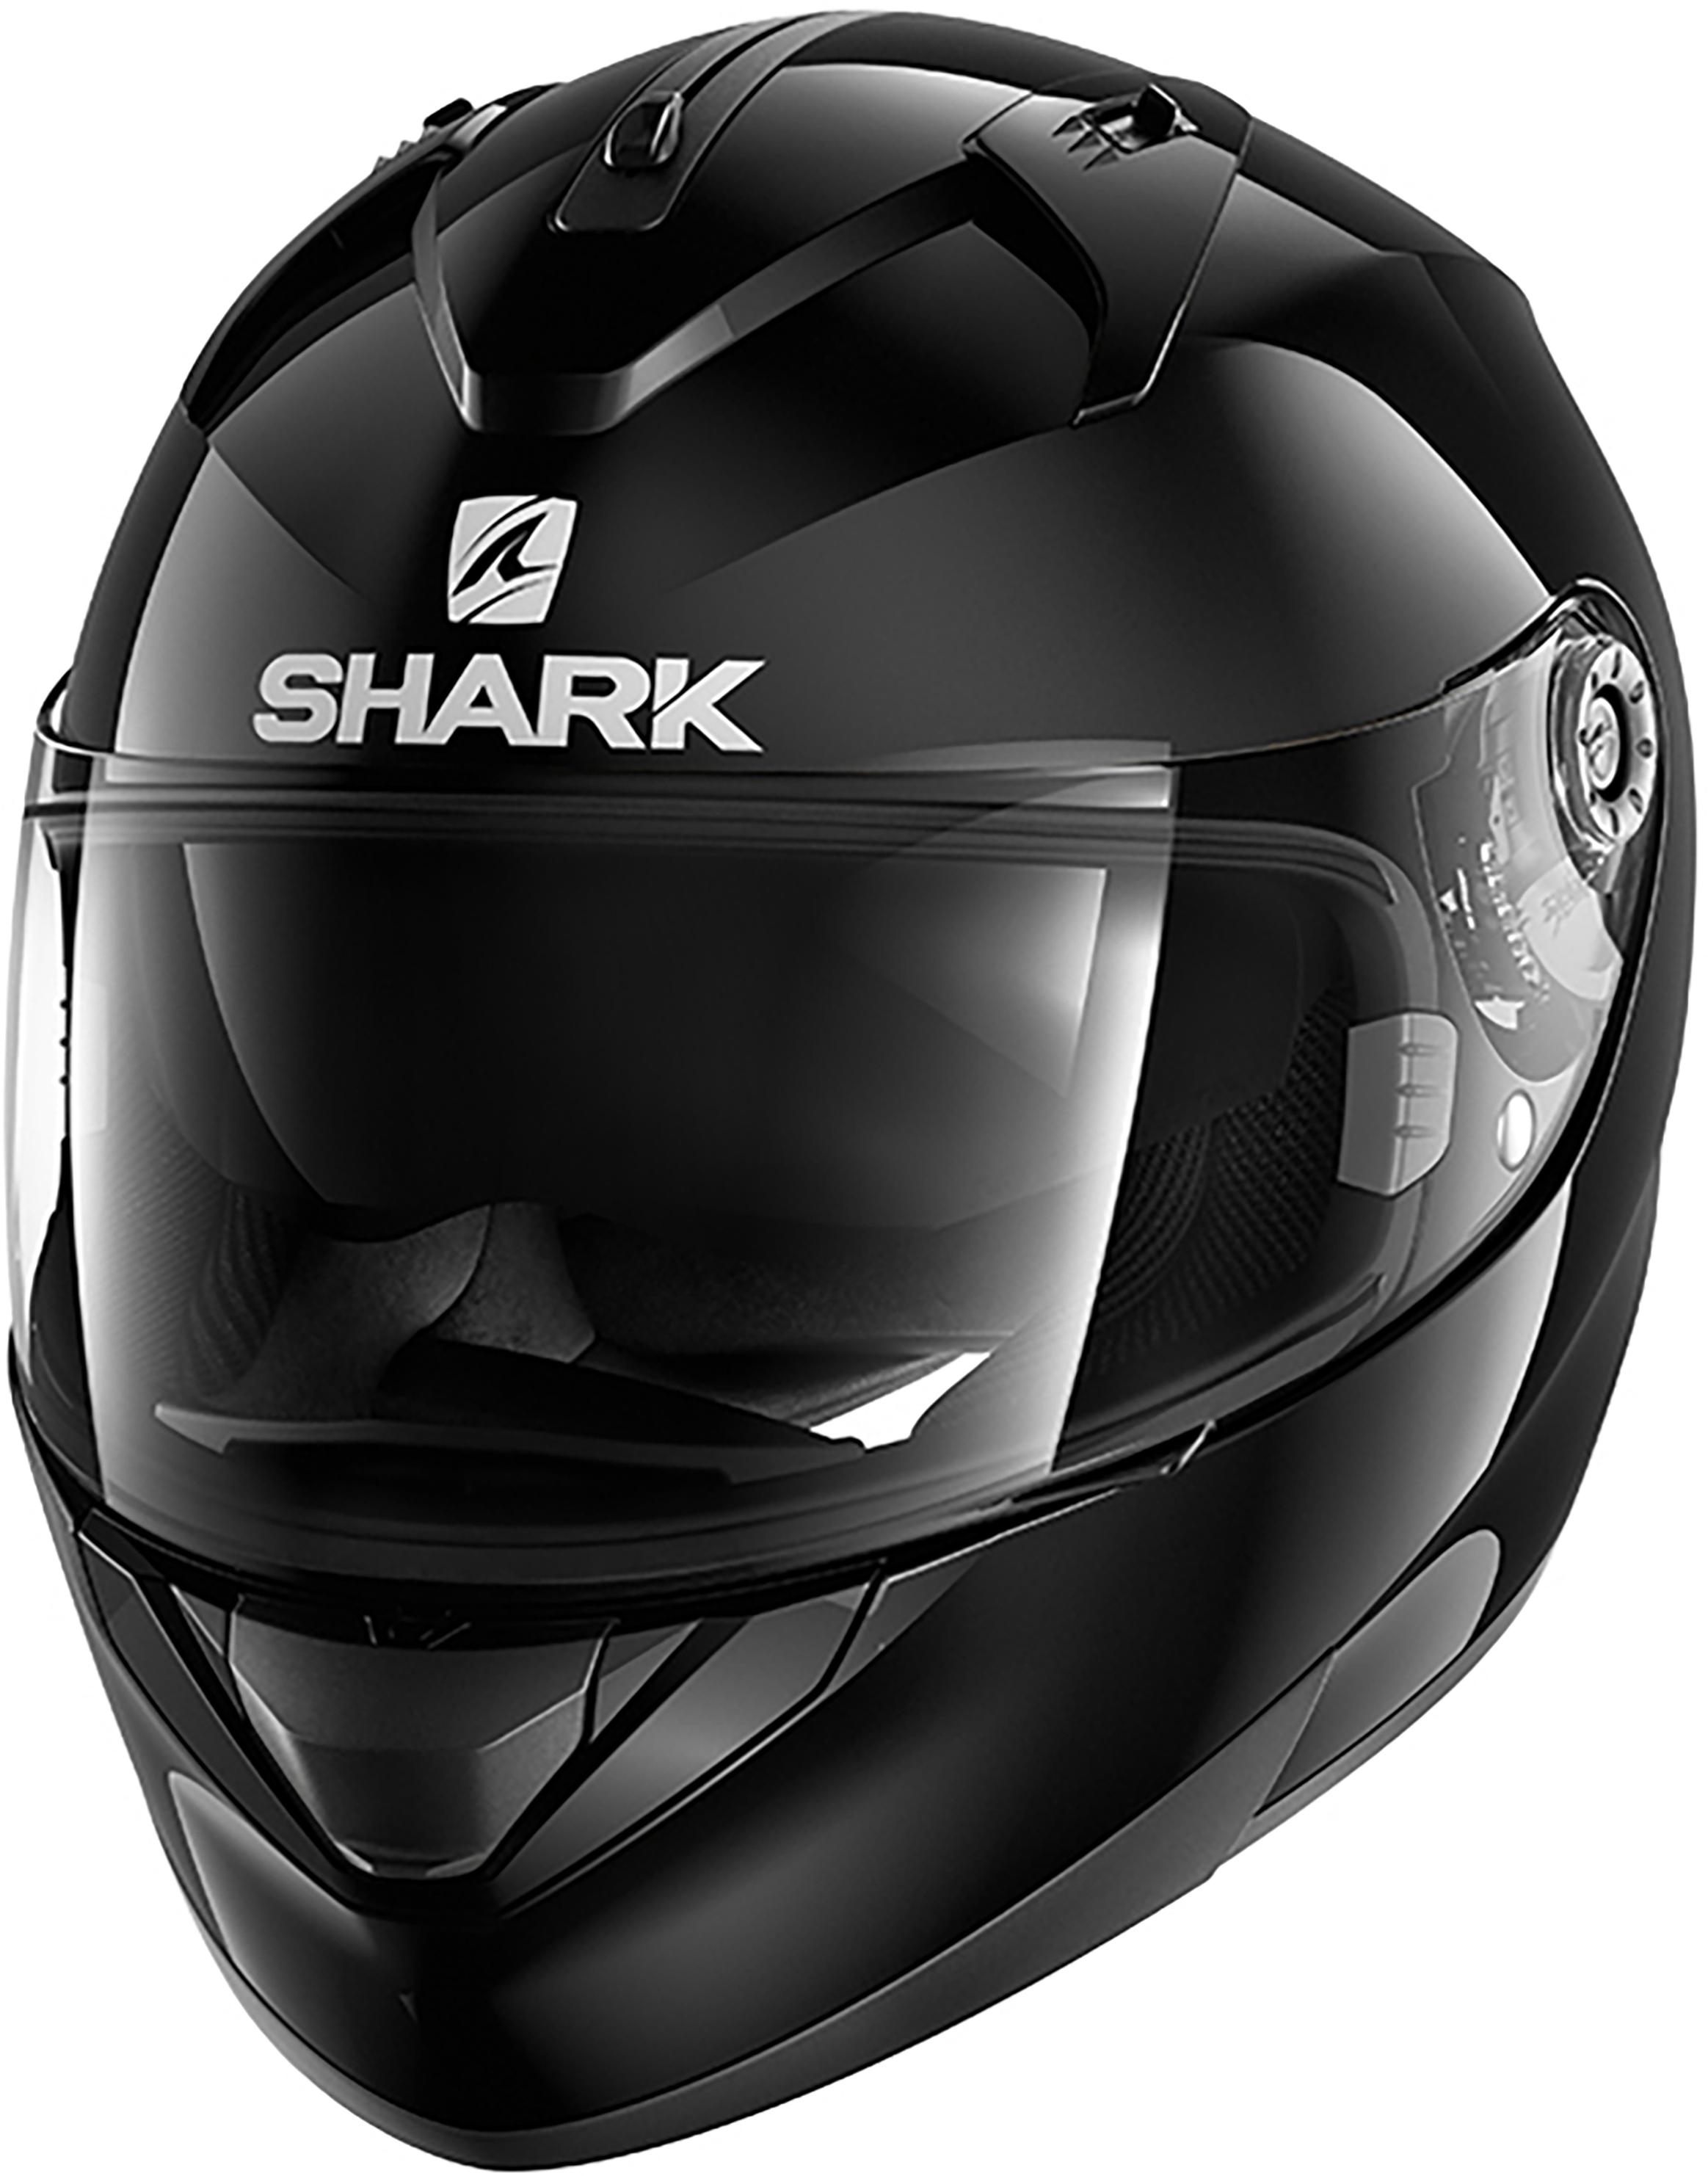 Shark Ridill Motorcycle Helmet - Medium